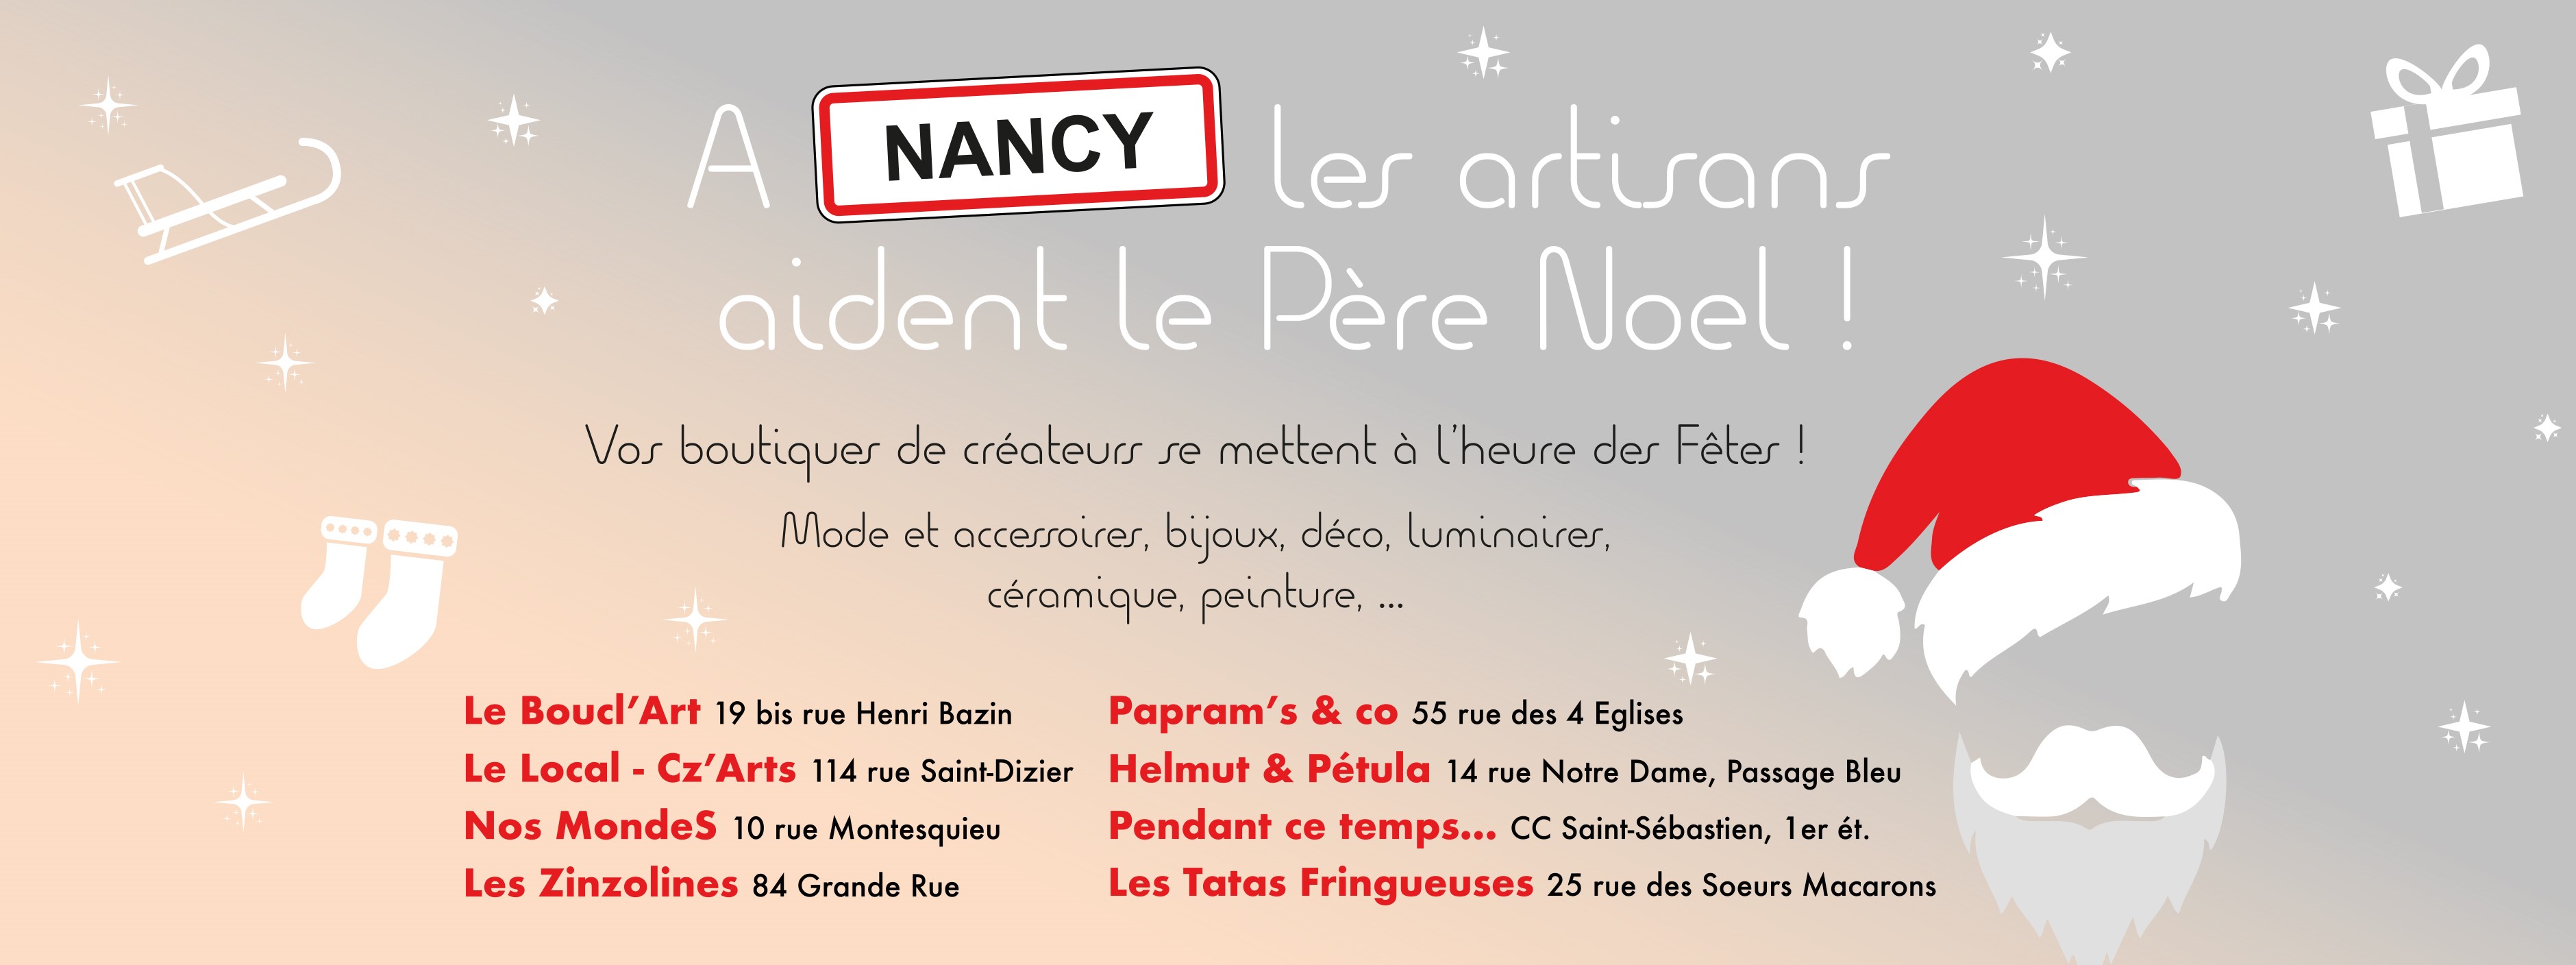 A Nancy les artisans aident le père Noël!